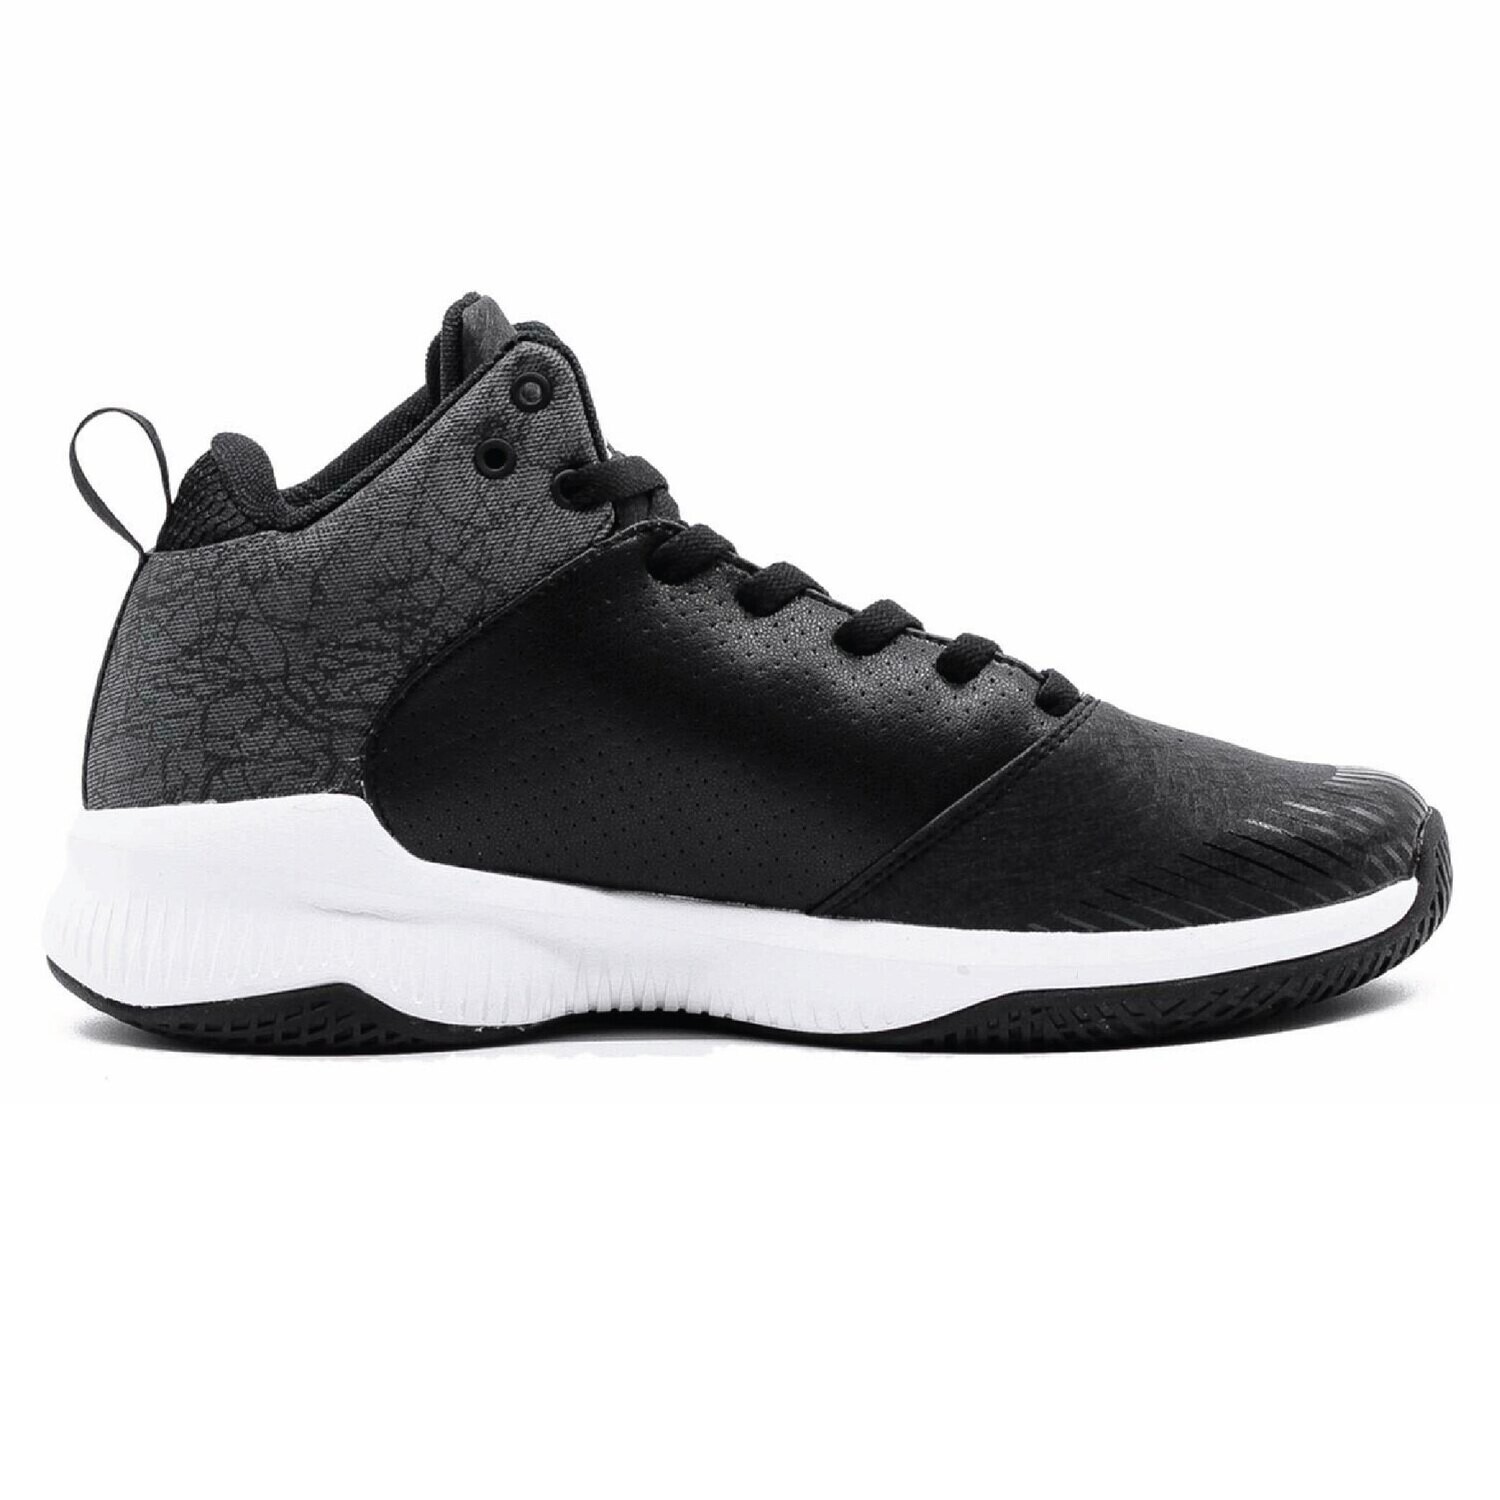 Rising Star Burner Men's Basketball Shoes (White Black)